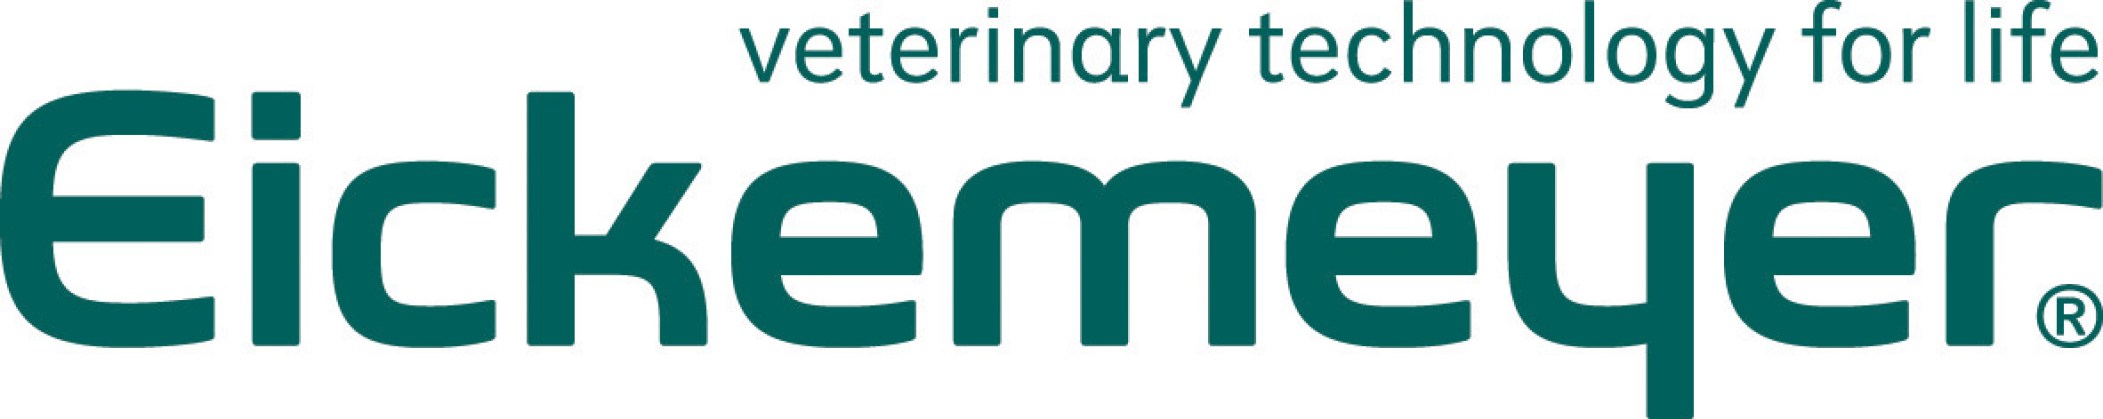 Eickemeyer-Logo3